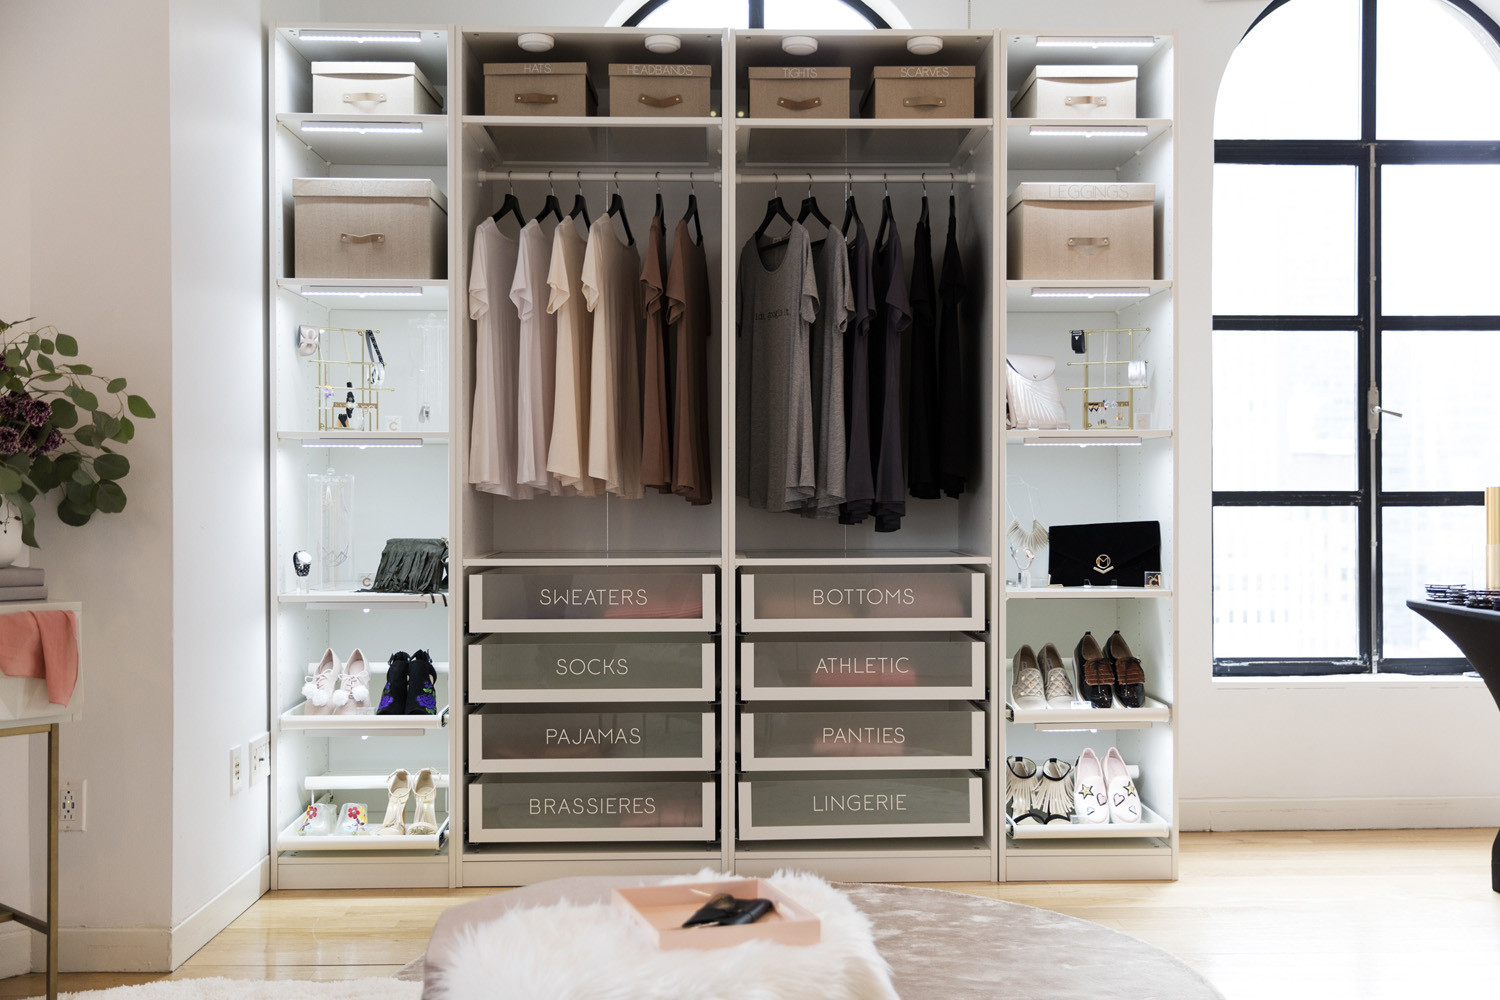 How To Organize Your Closet DIY
 Closet Organization – 4 DIY Ideas to Organize your Closet